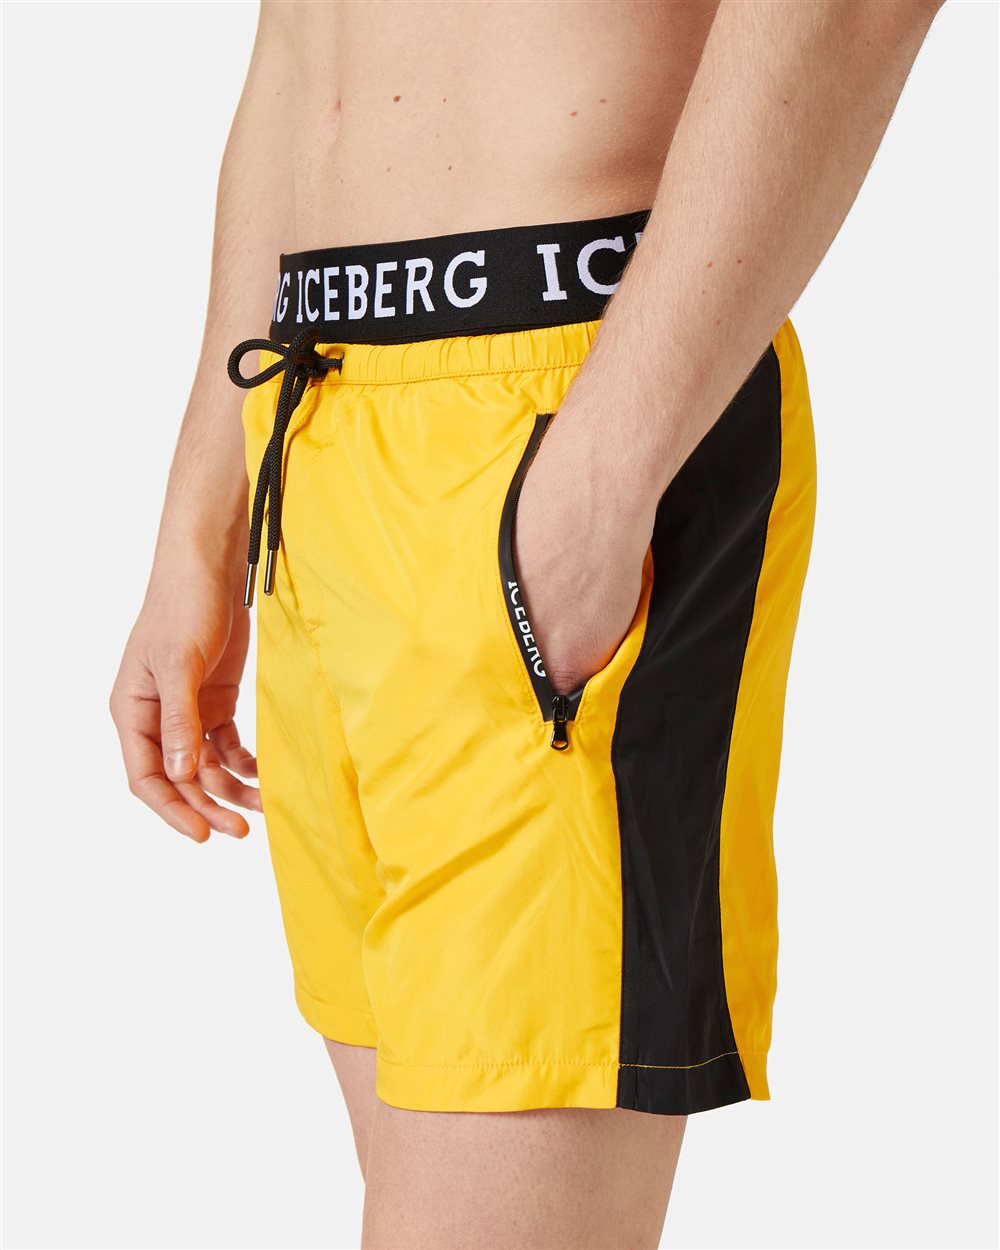 Swim trunks with logo - Iceberg - Official Website